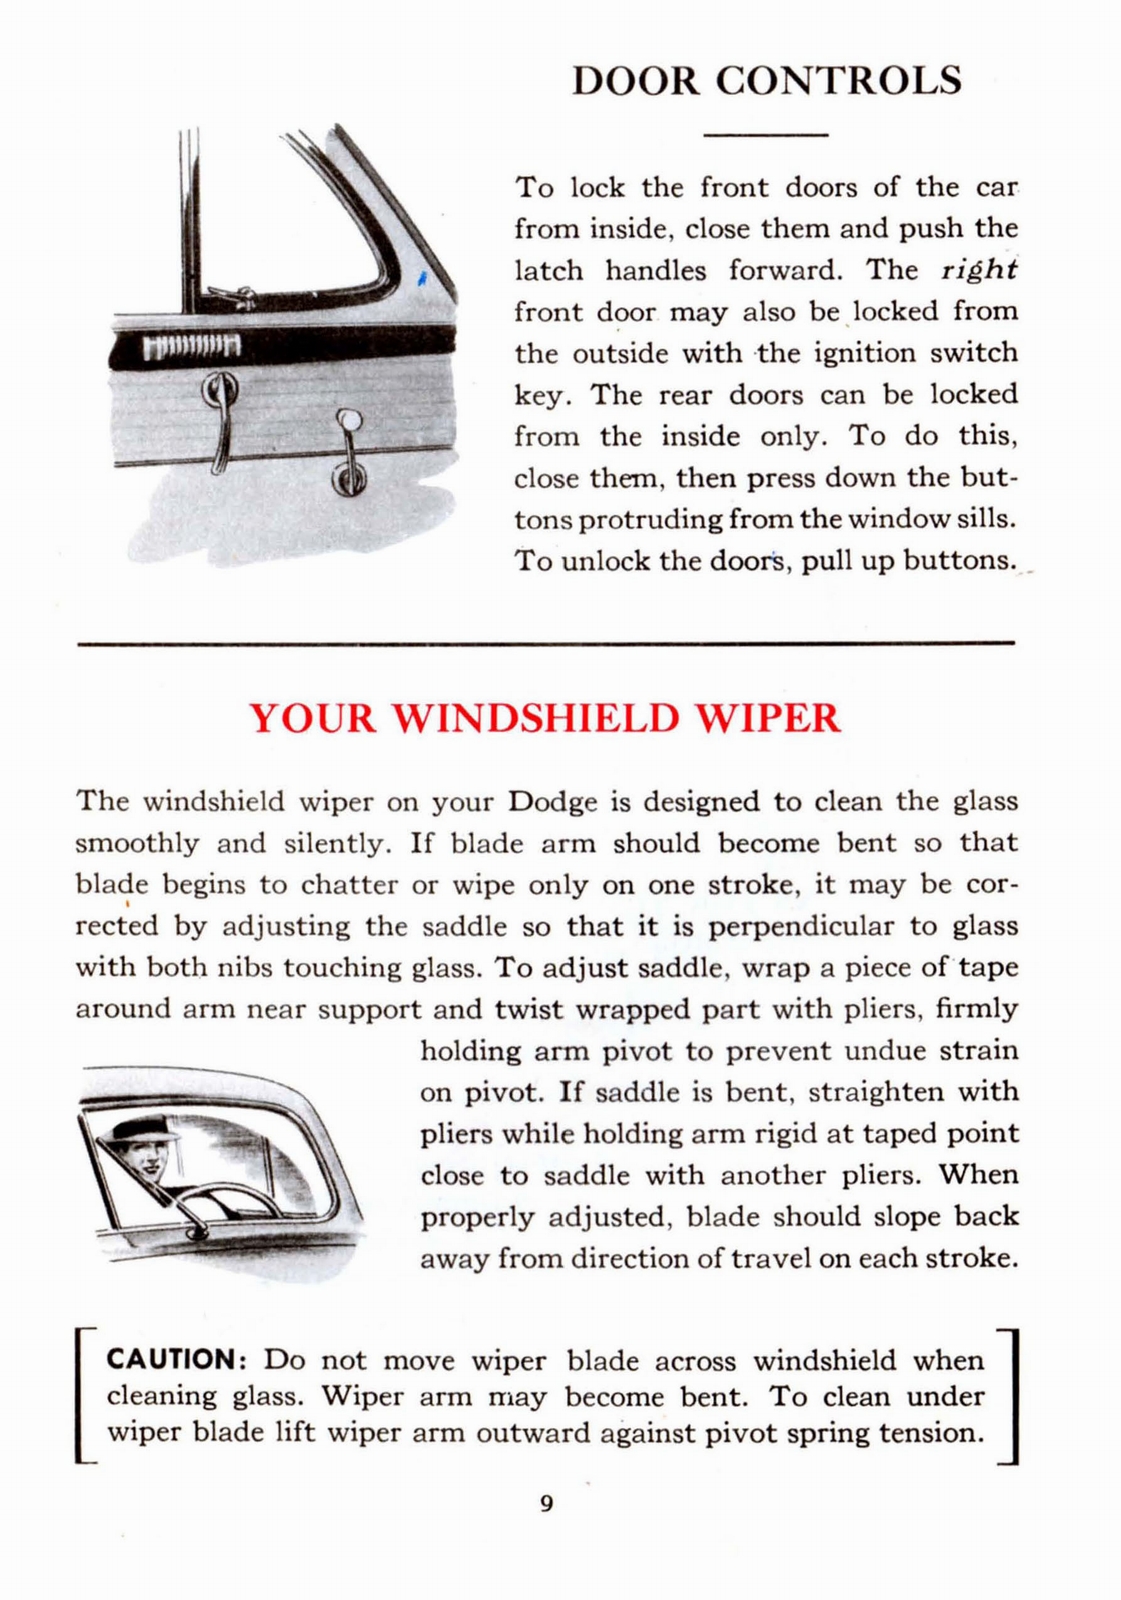 n_1941 Dodge Owners Manual-09.jpg